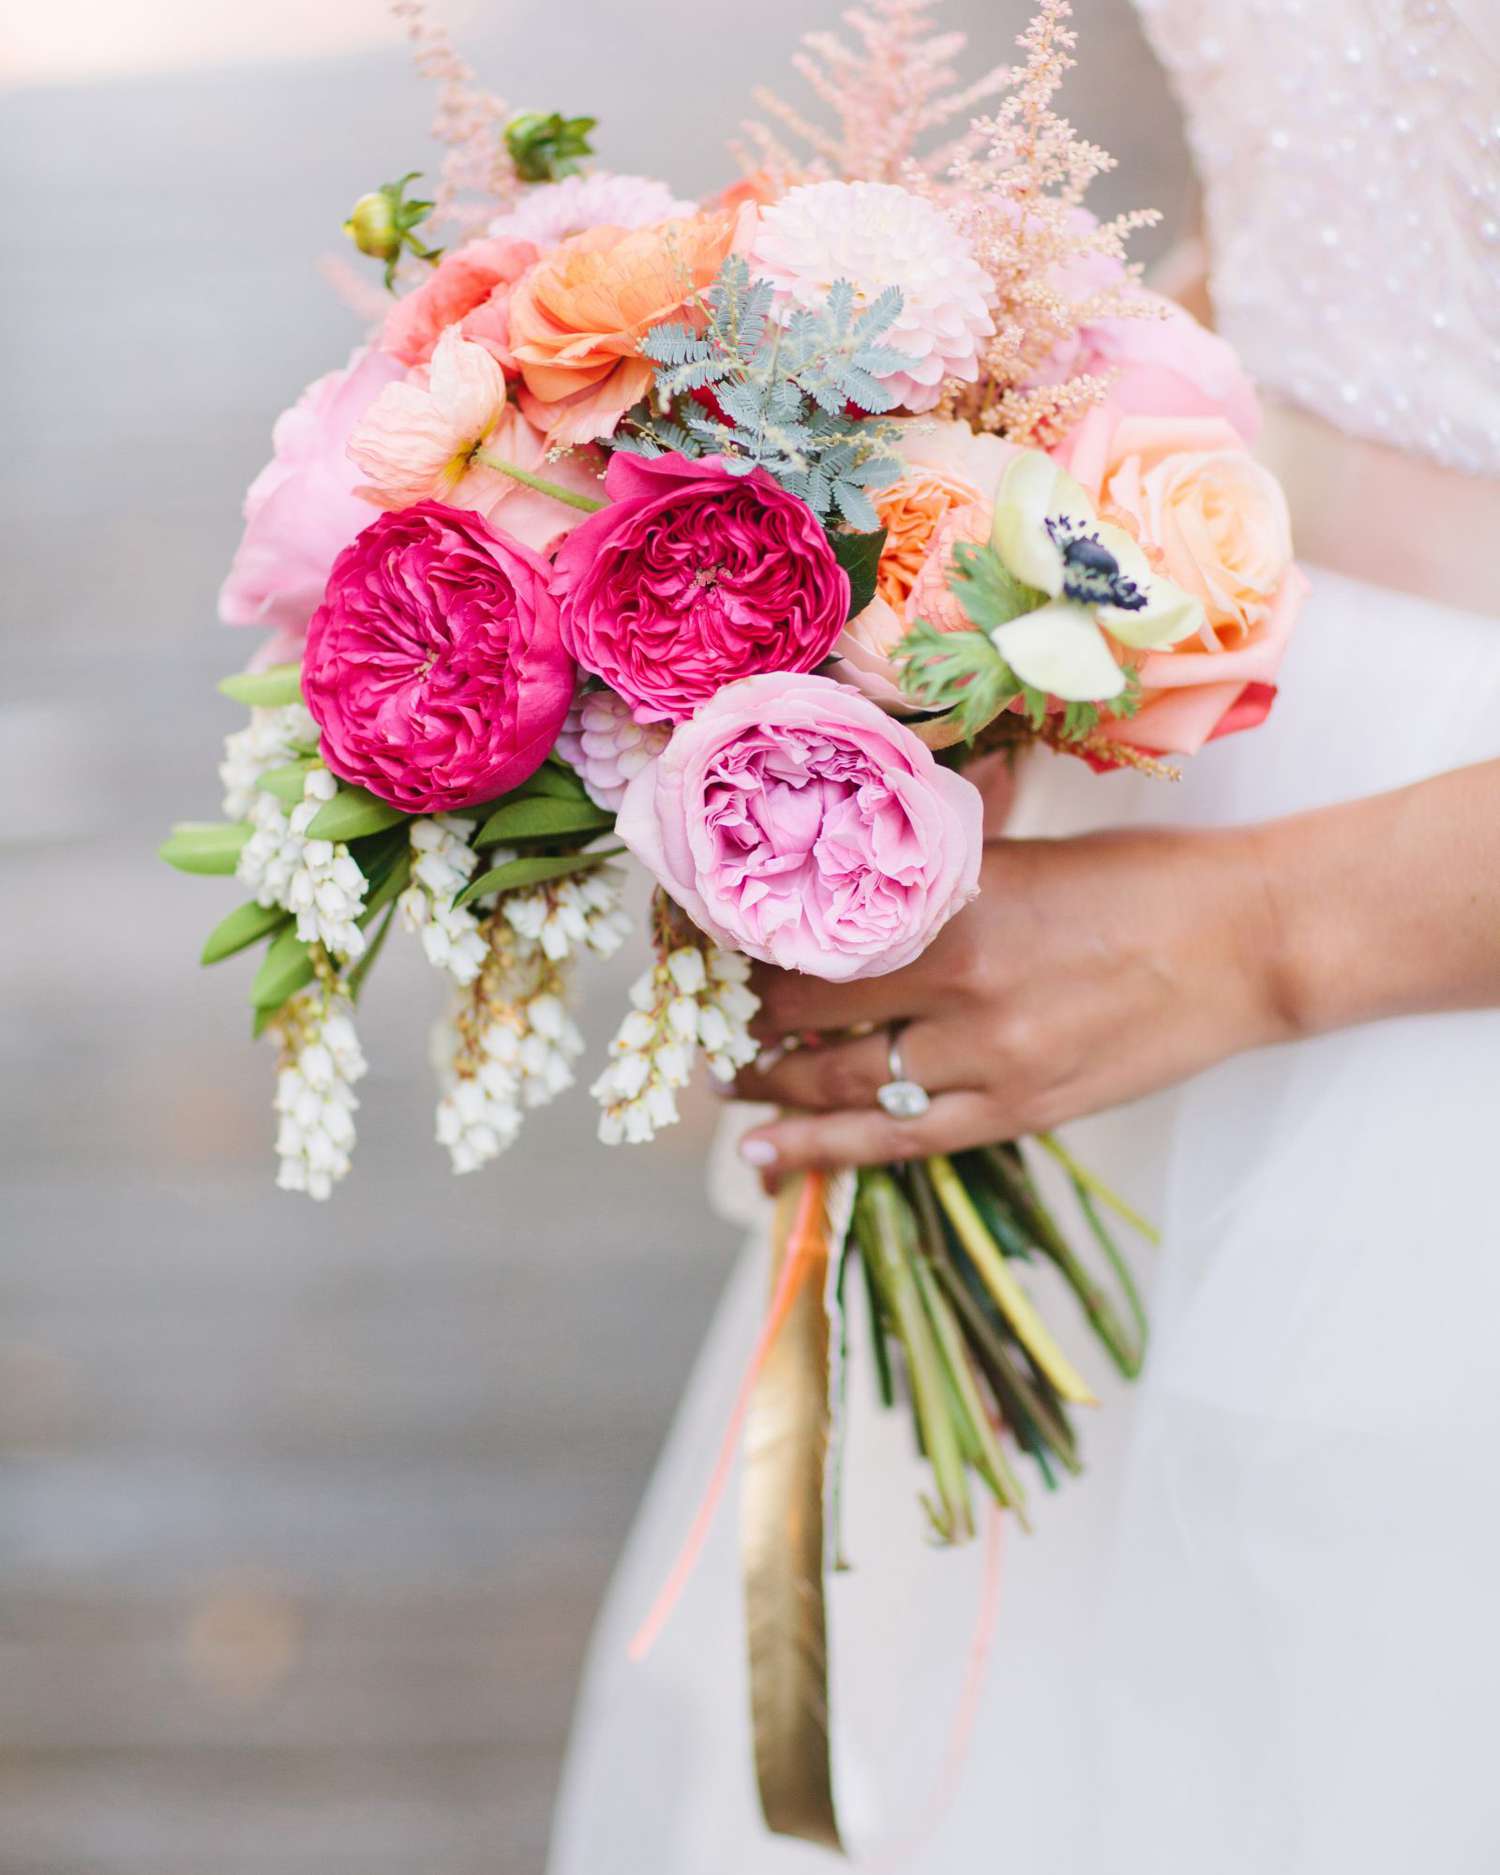 The Bridal Bouquet